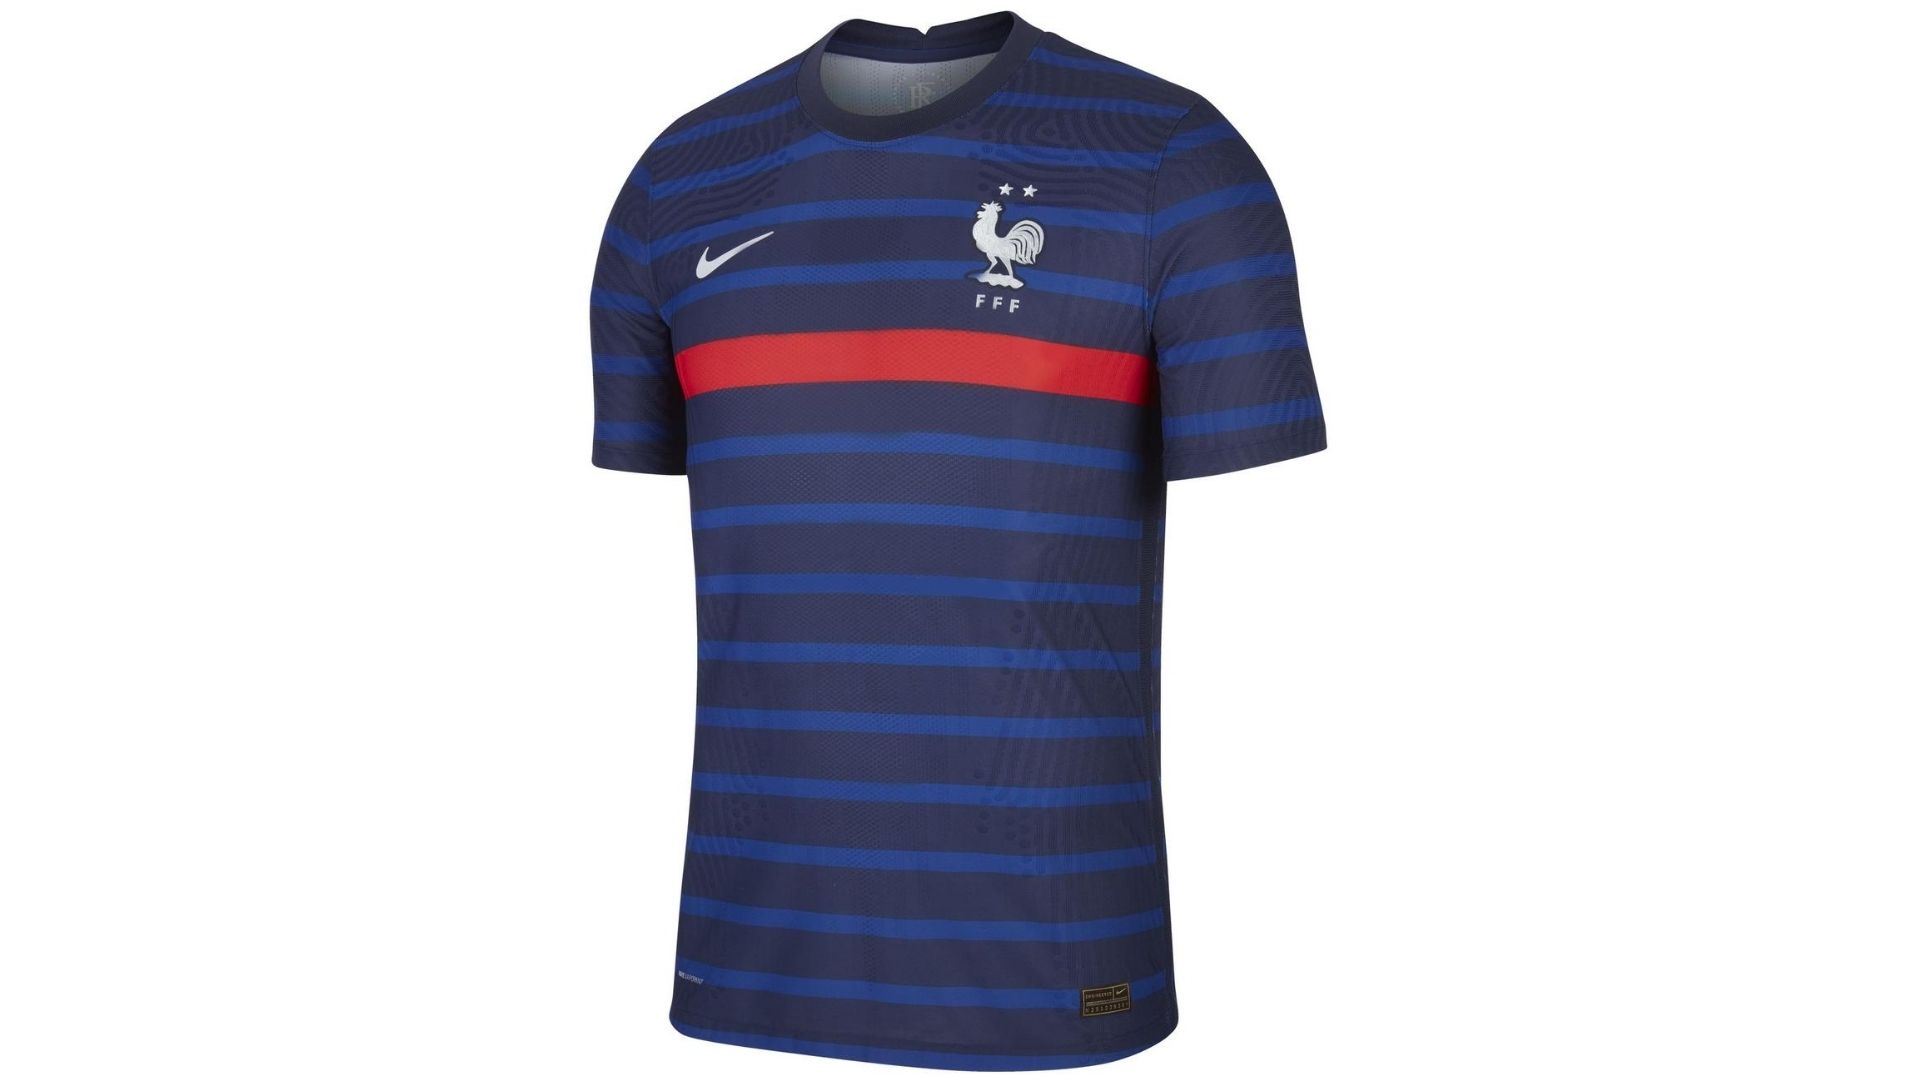 Les nouveaux maillots de l'équipe de France pour l'Euro entrent en scène